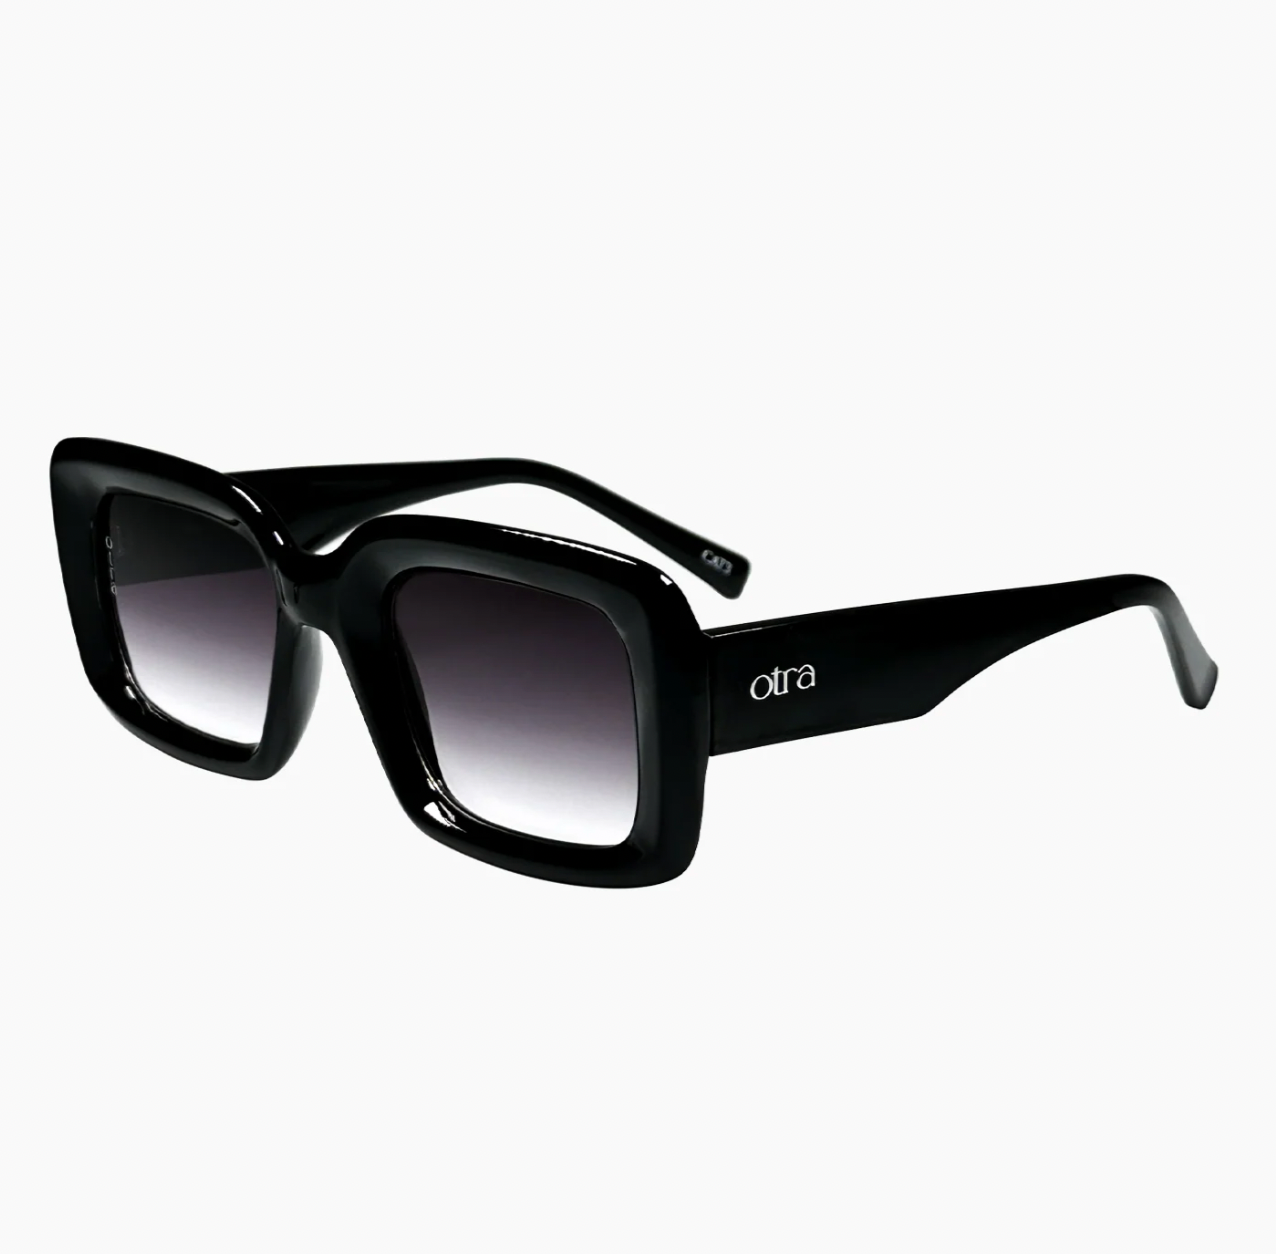 Chelsea Otra Sunglasses - Black Fade